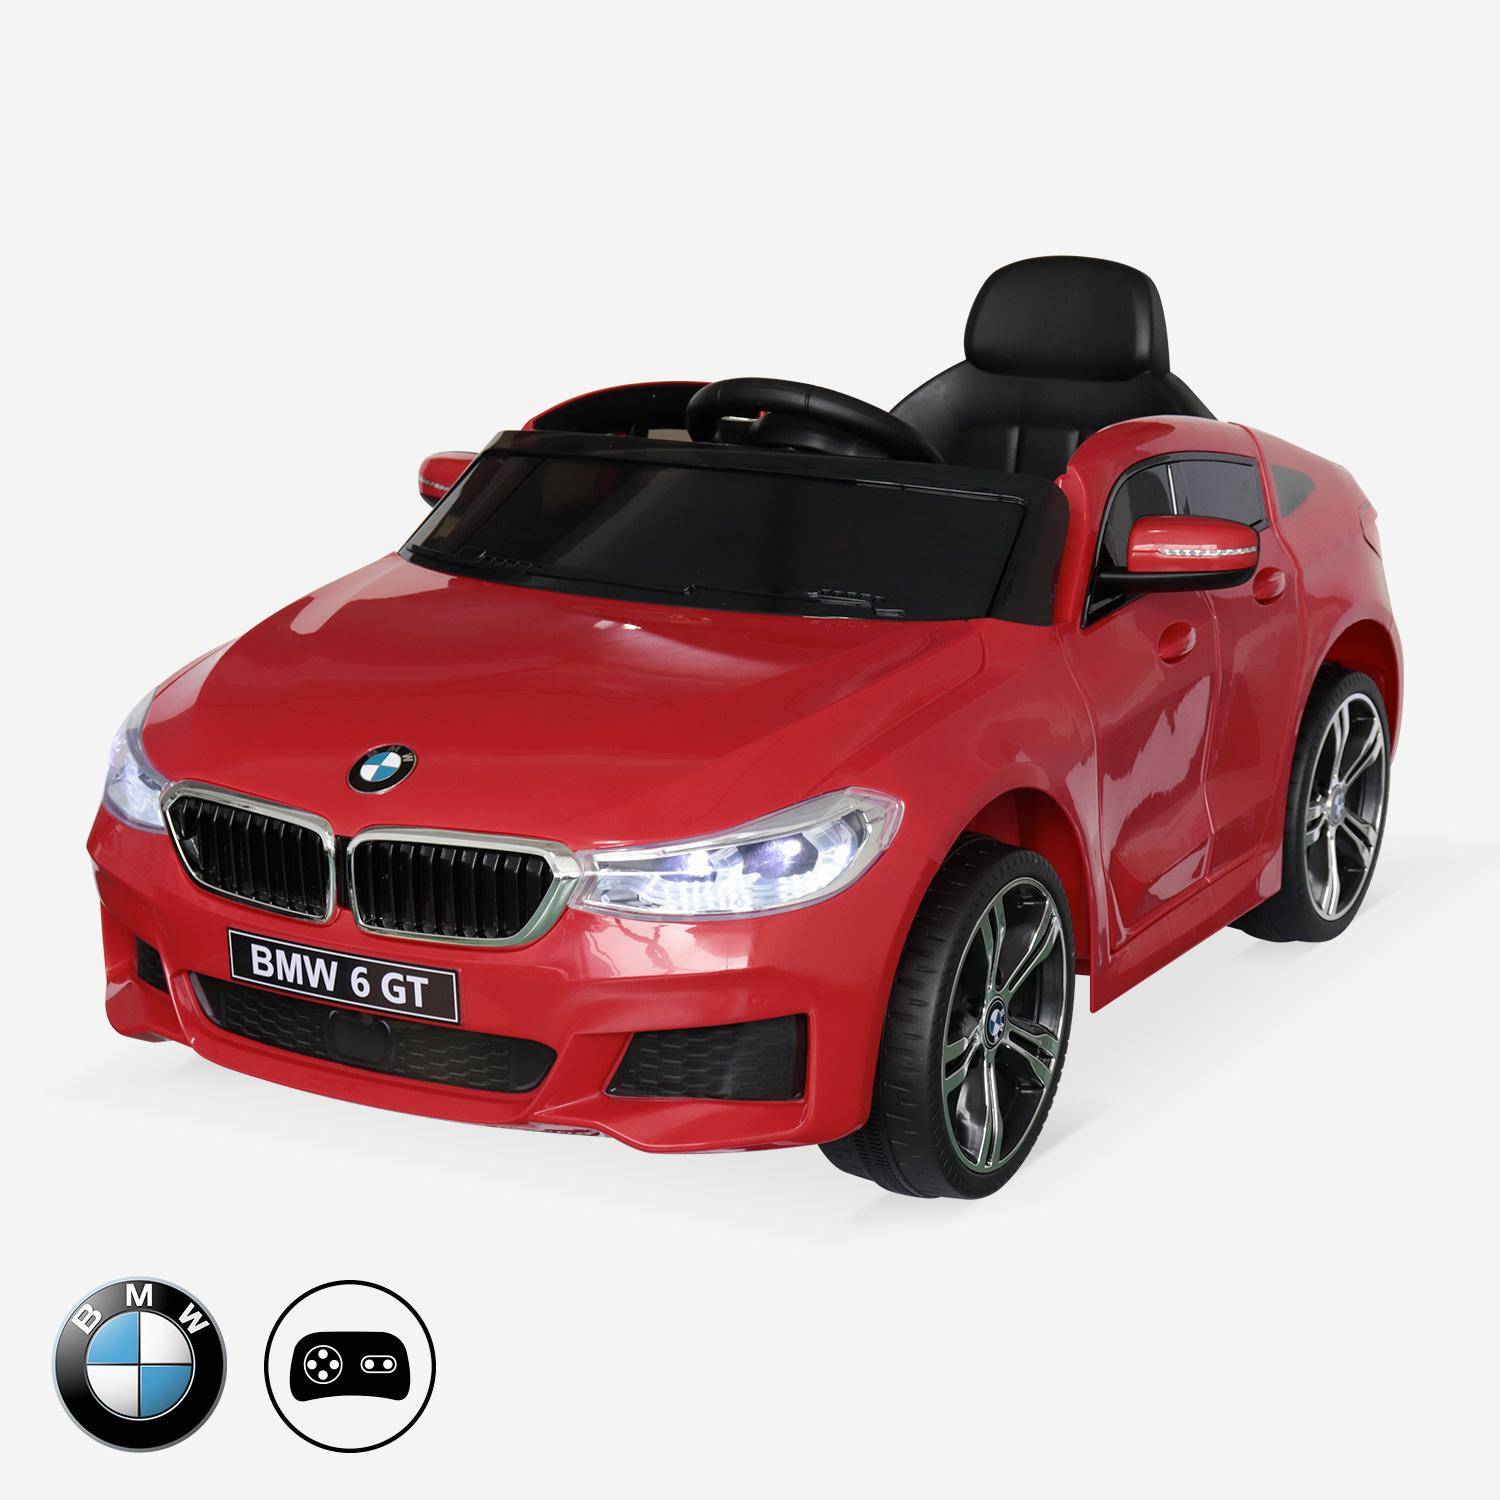 BMW Série 6 GT Gran Turismo rouge, voiture électrique pour enfants 12V 4 Ah, 1 place, avec autoradio et télécommande Photo1